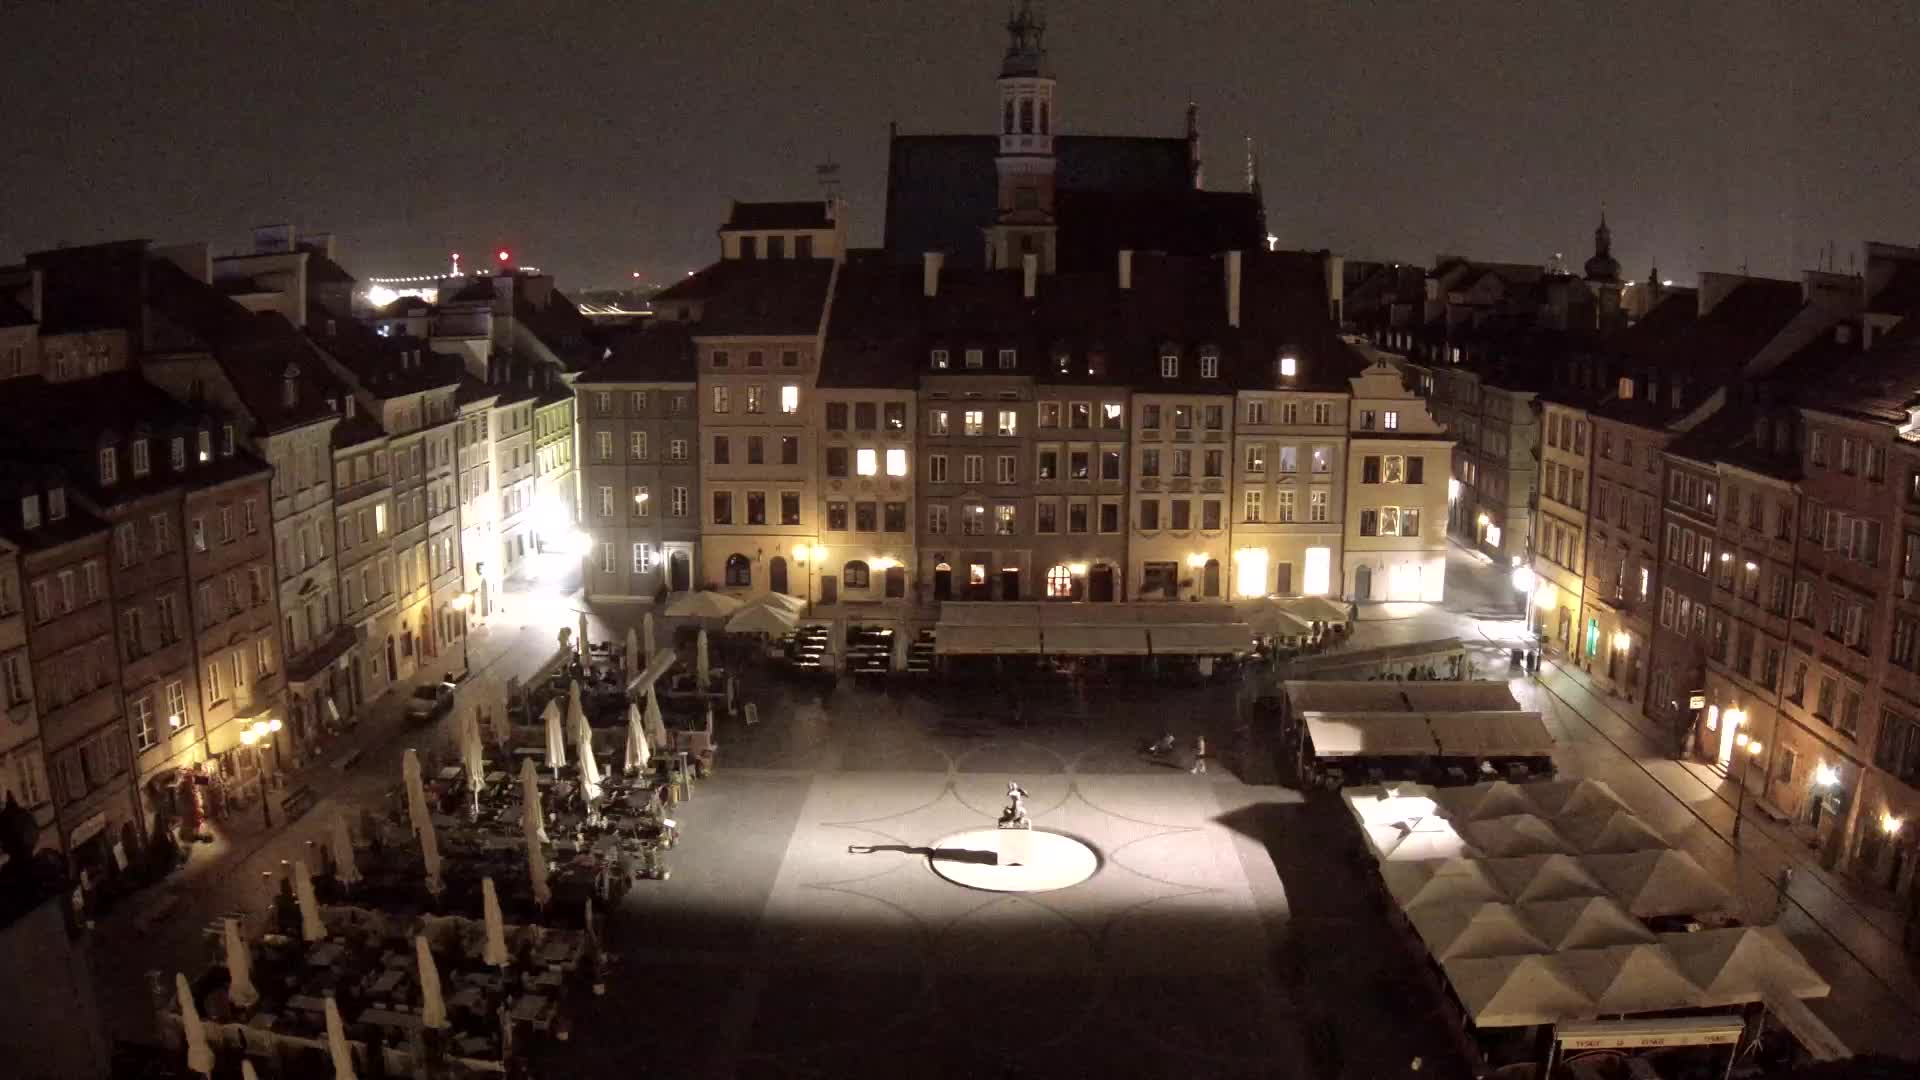 Warszawa Man. 01:35